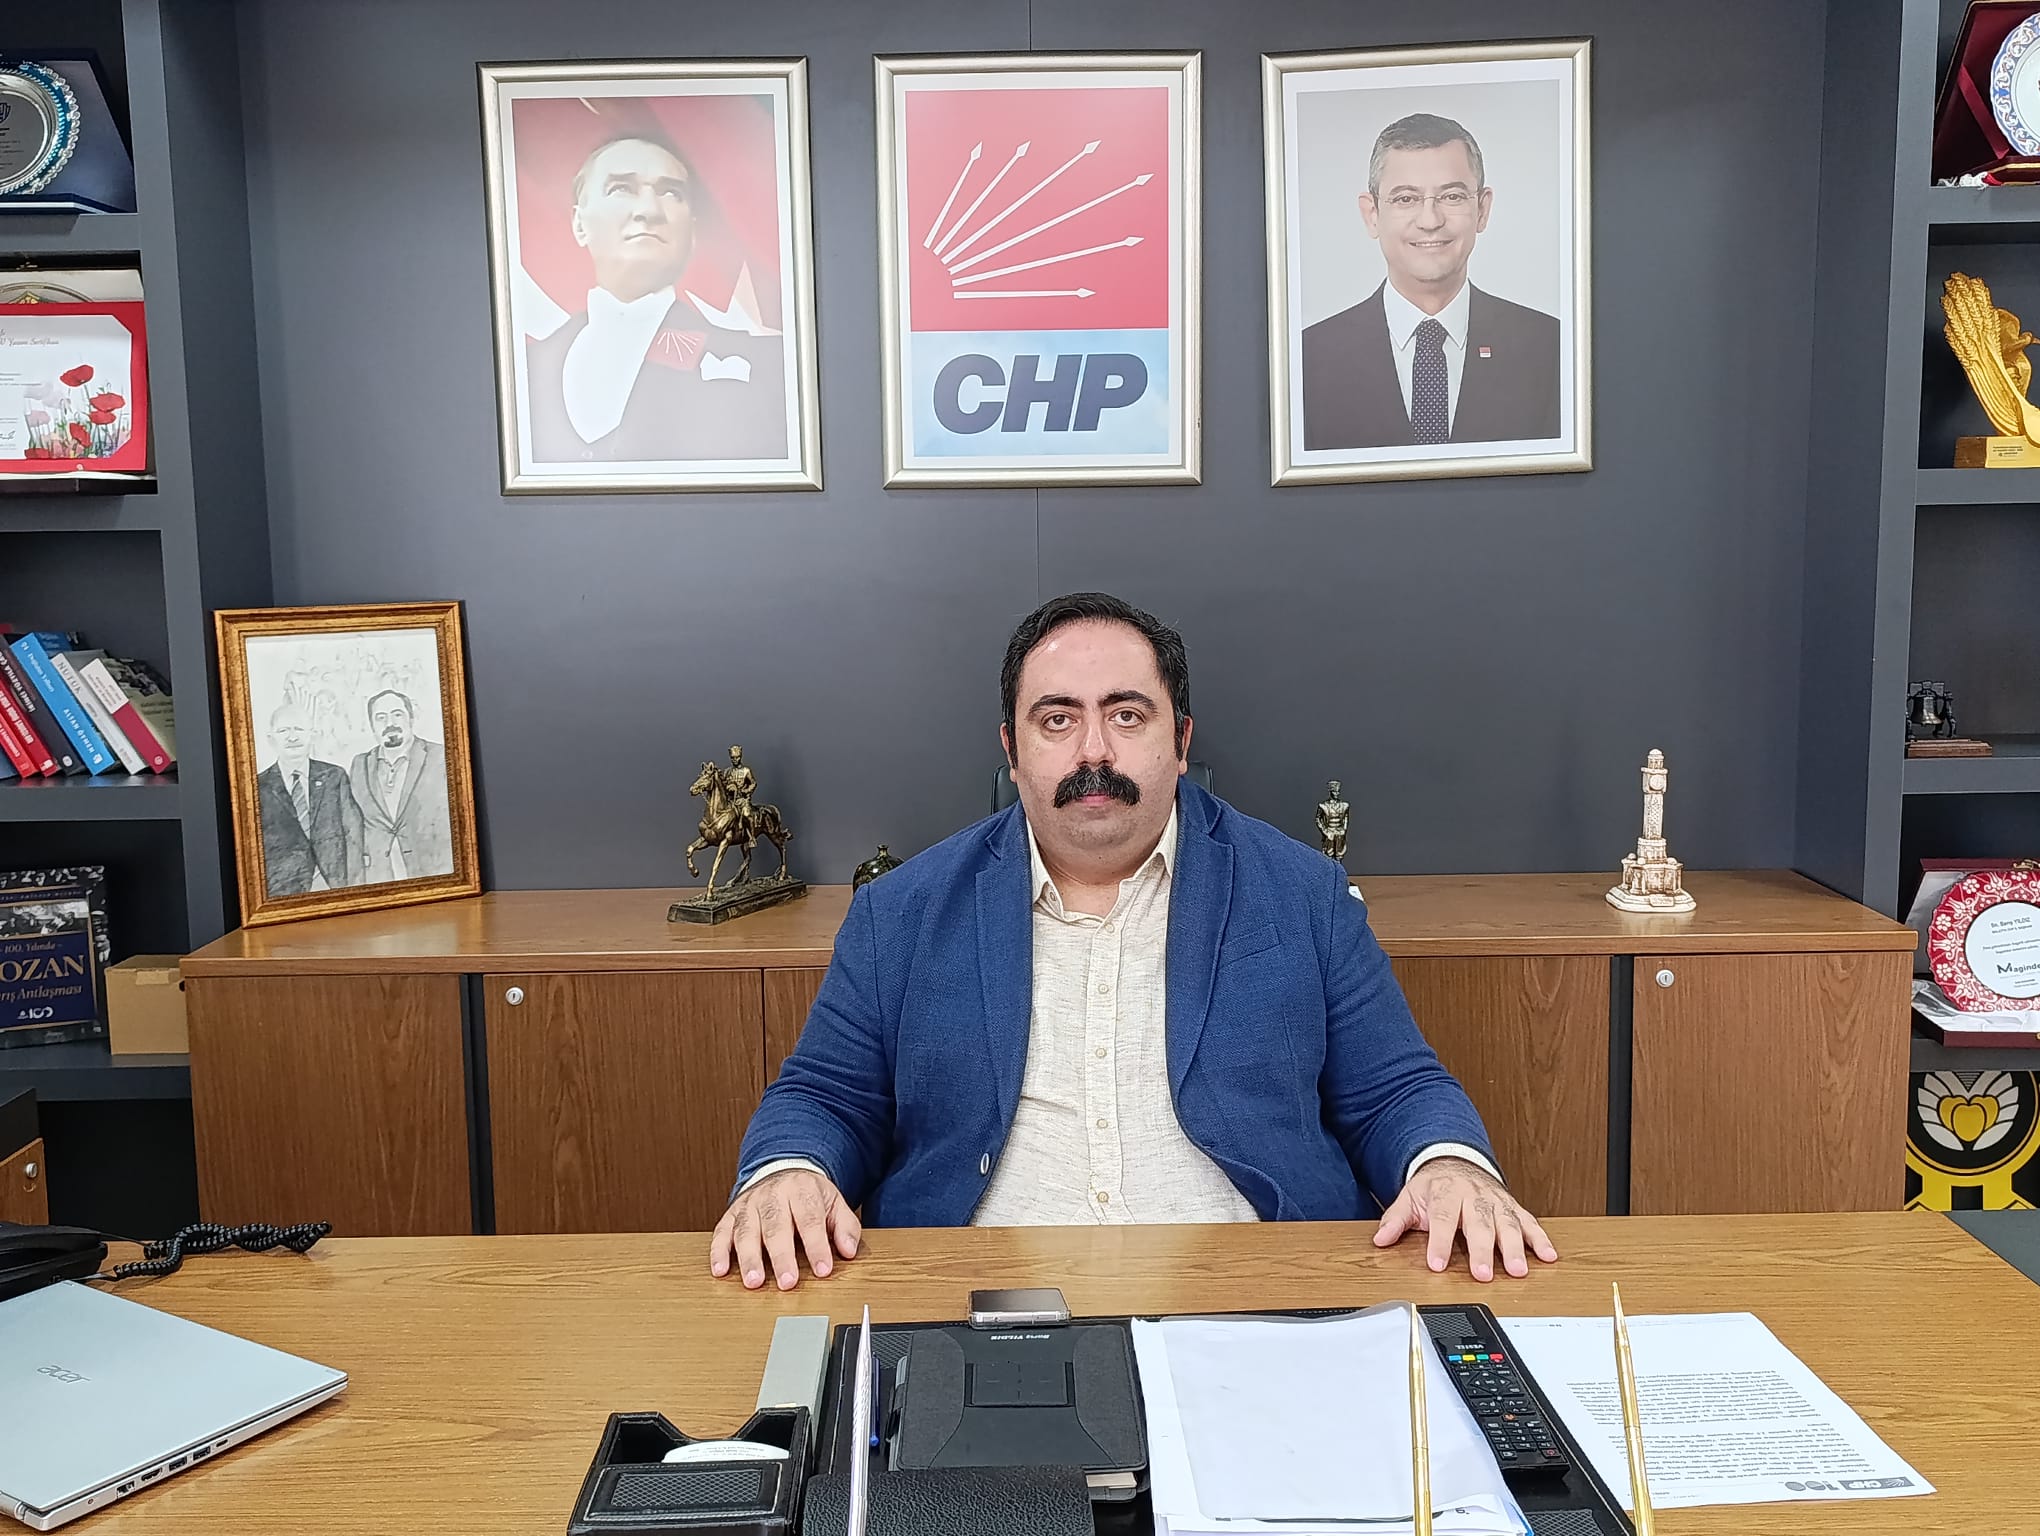 CHP Malatya İl Başkanı Barış Yıldız Basın Açıklaması 